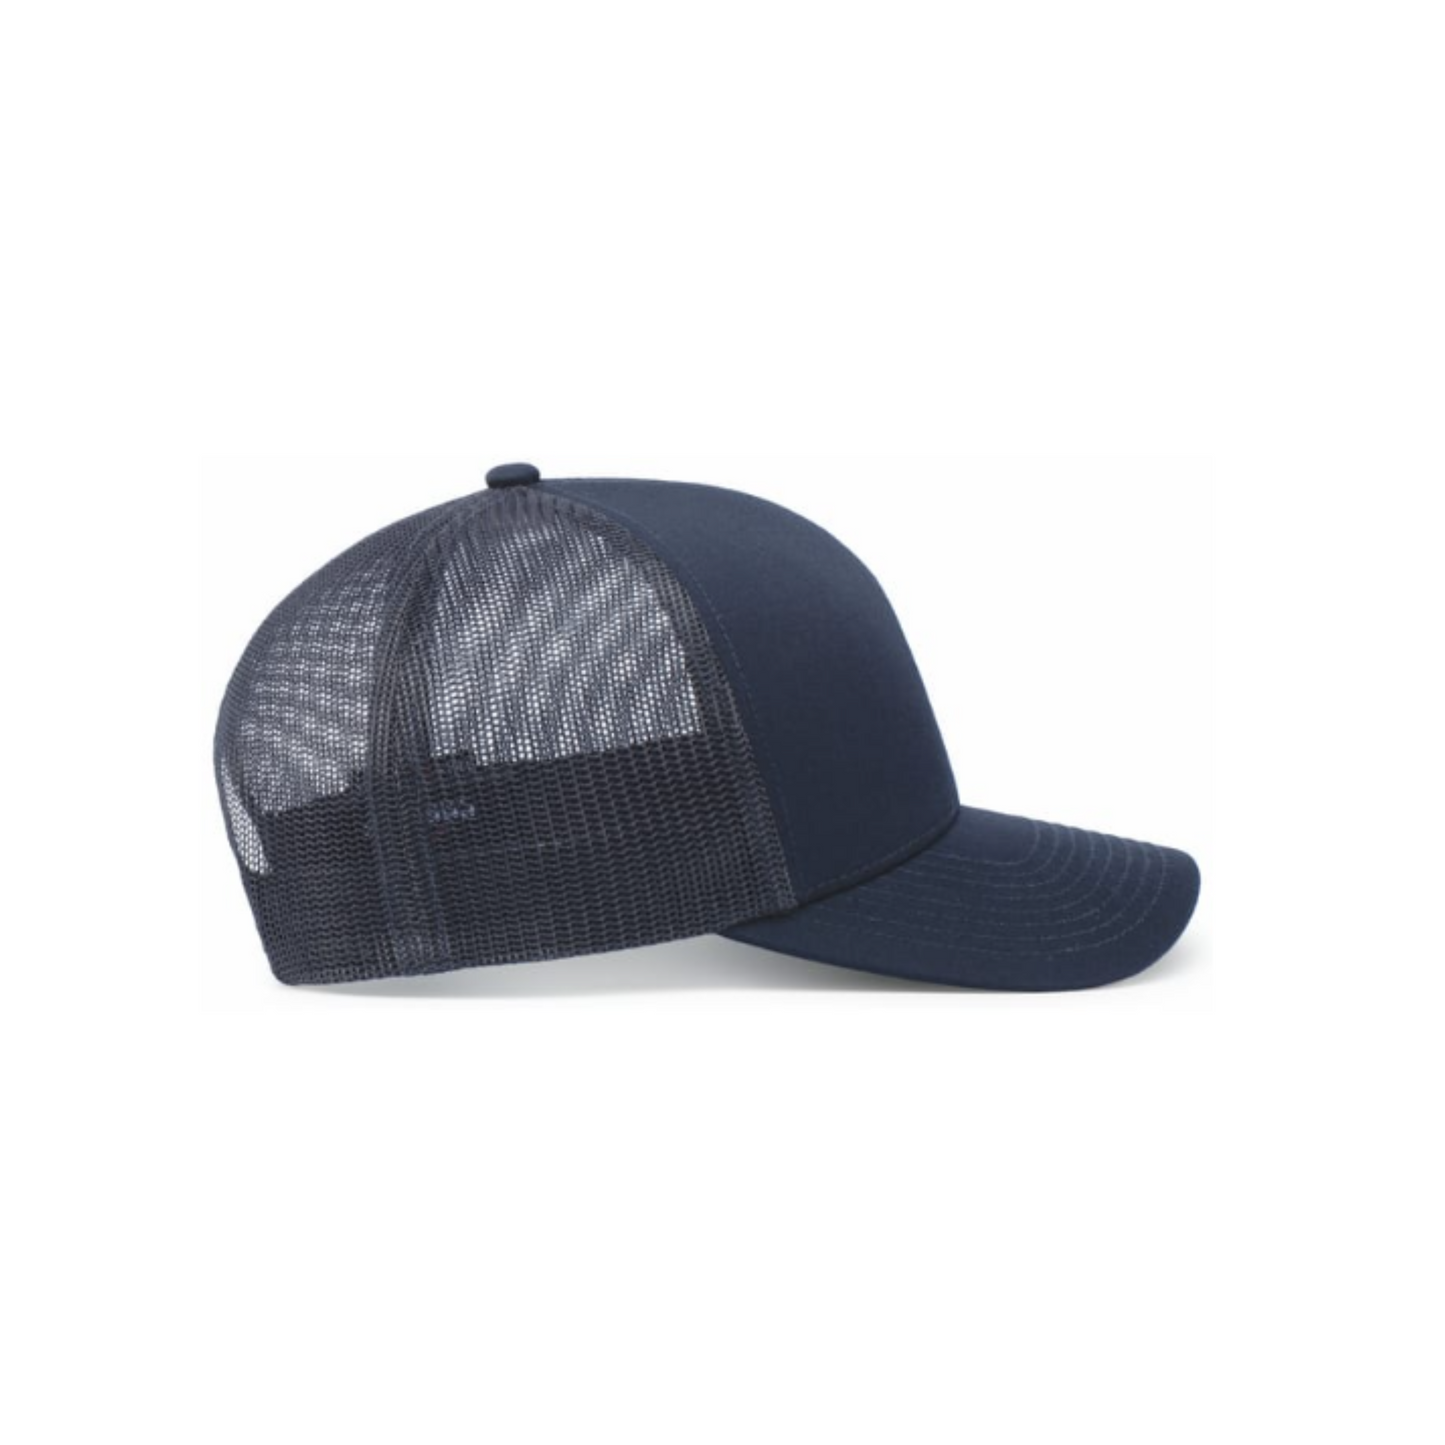 Pacific Headwear Trucker Snapback Cap